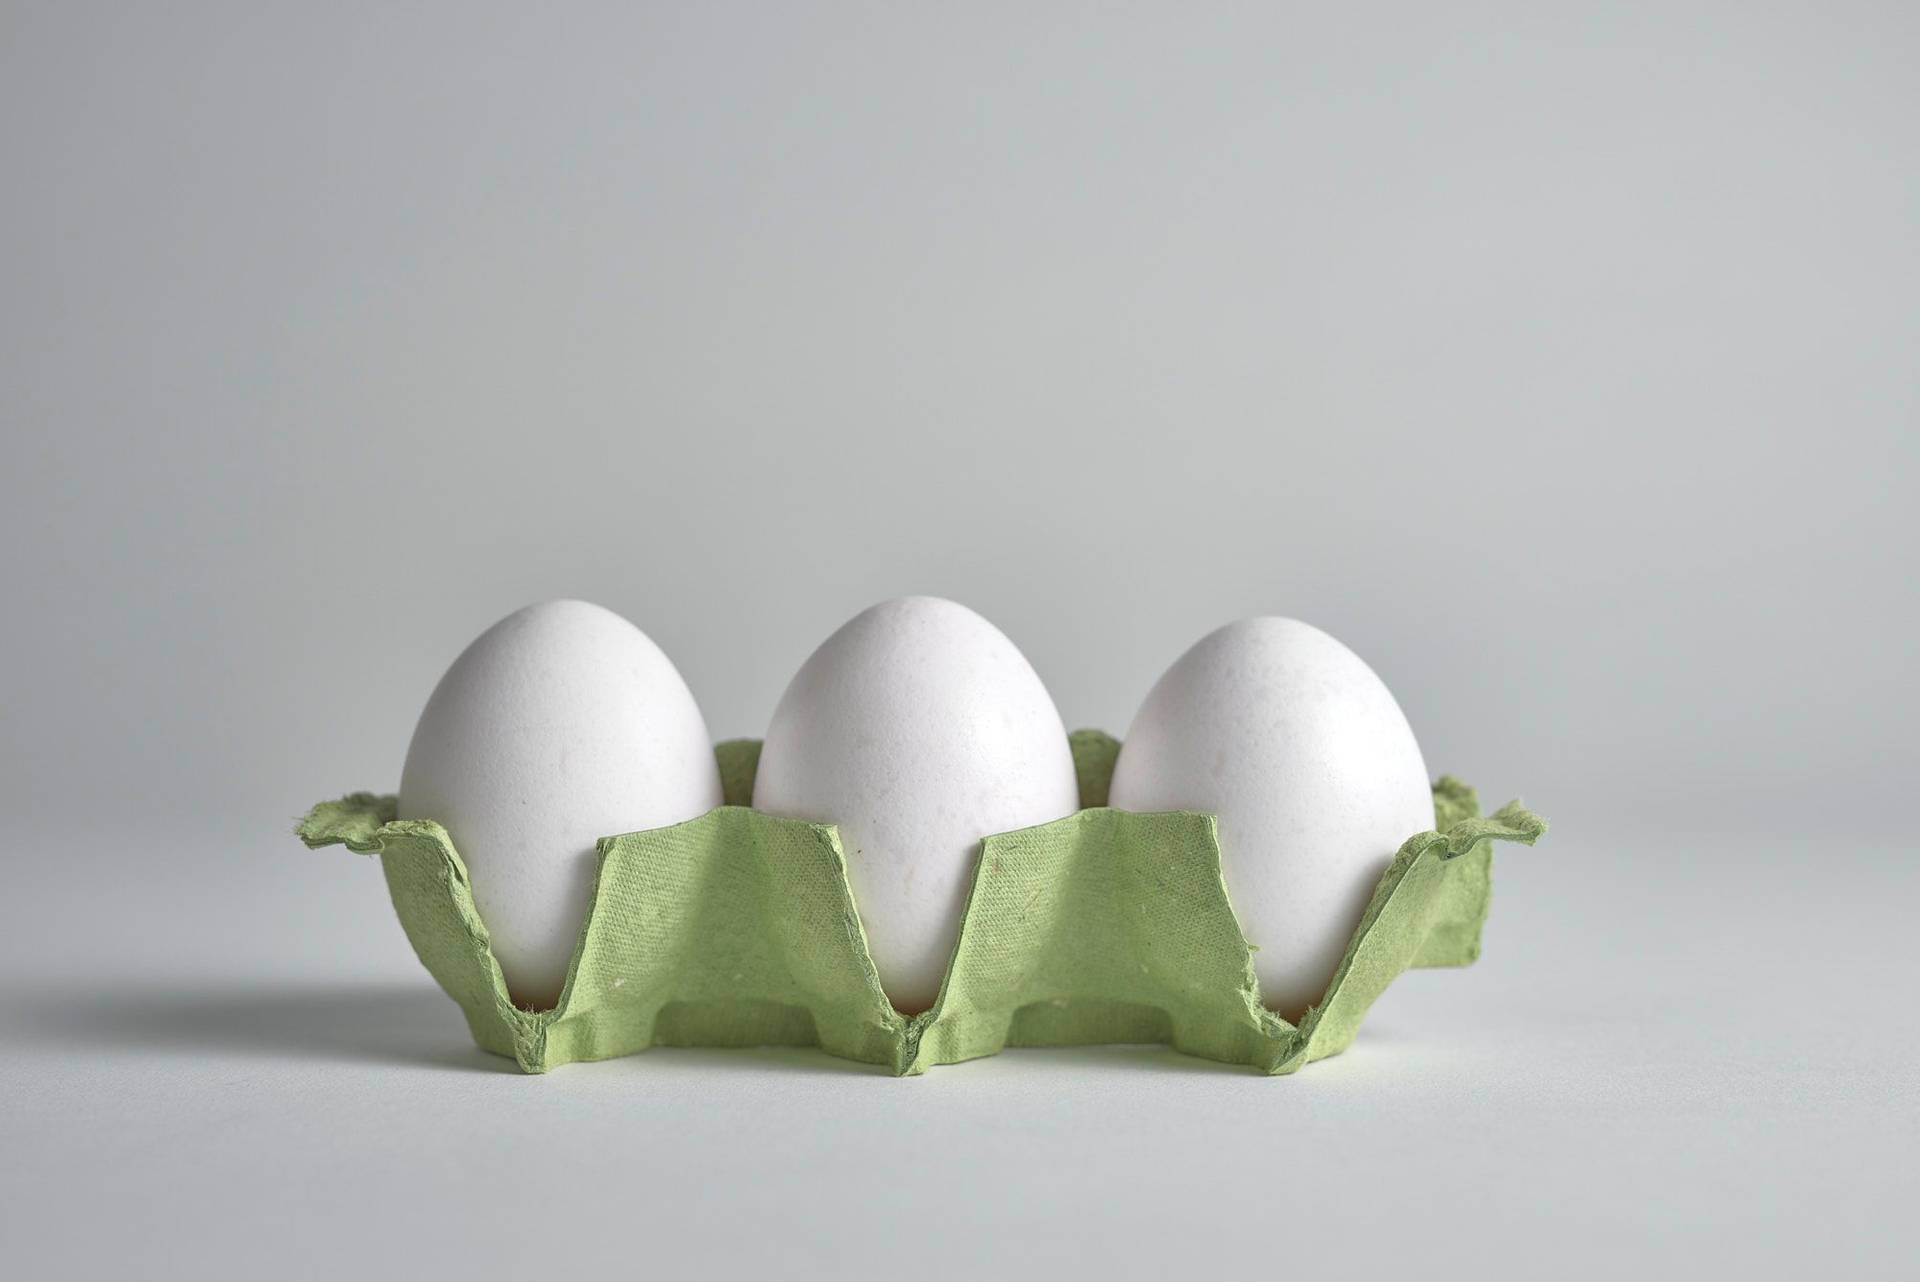 drei weiße eier in einem grünen eierkarton auf weißem hintergrund